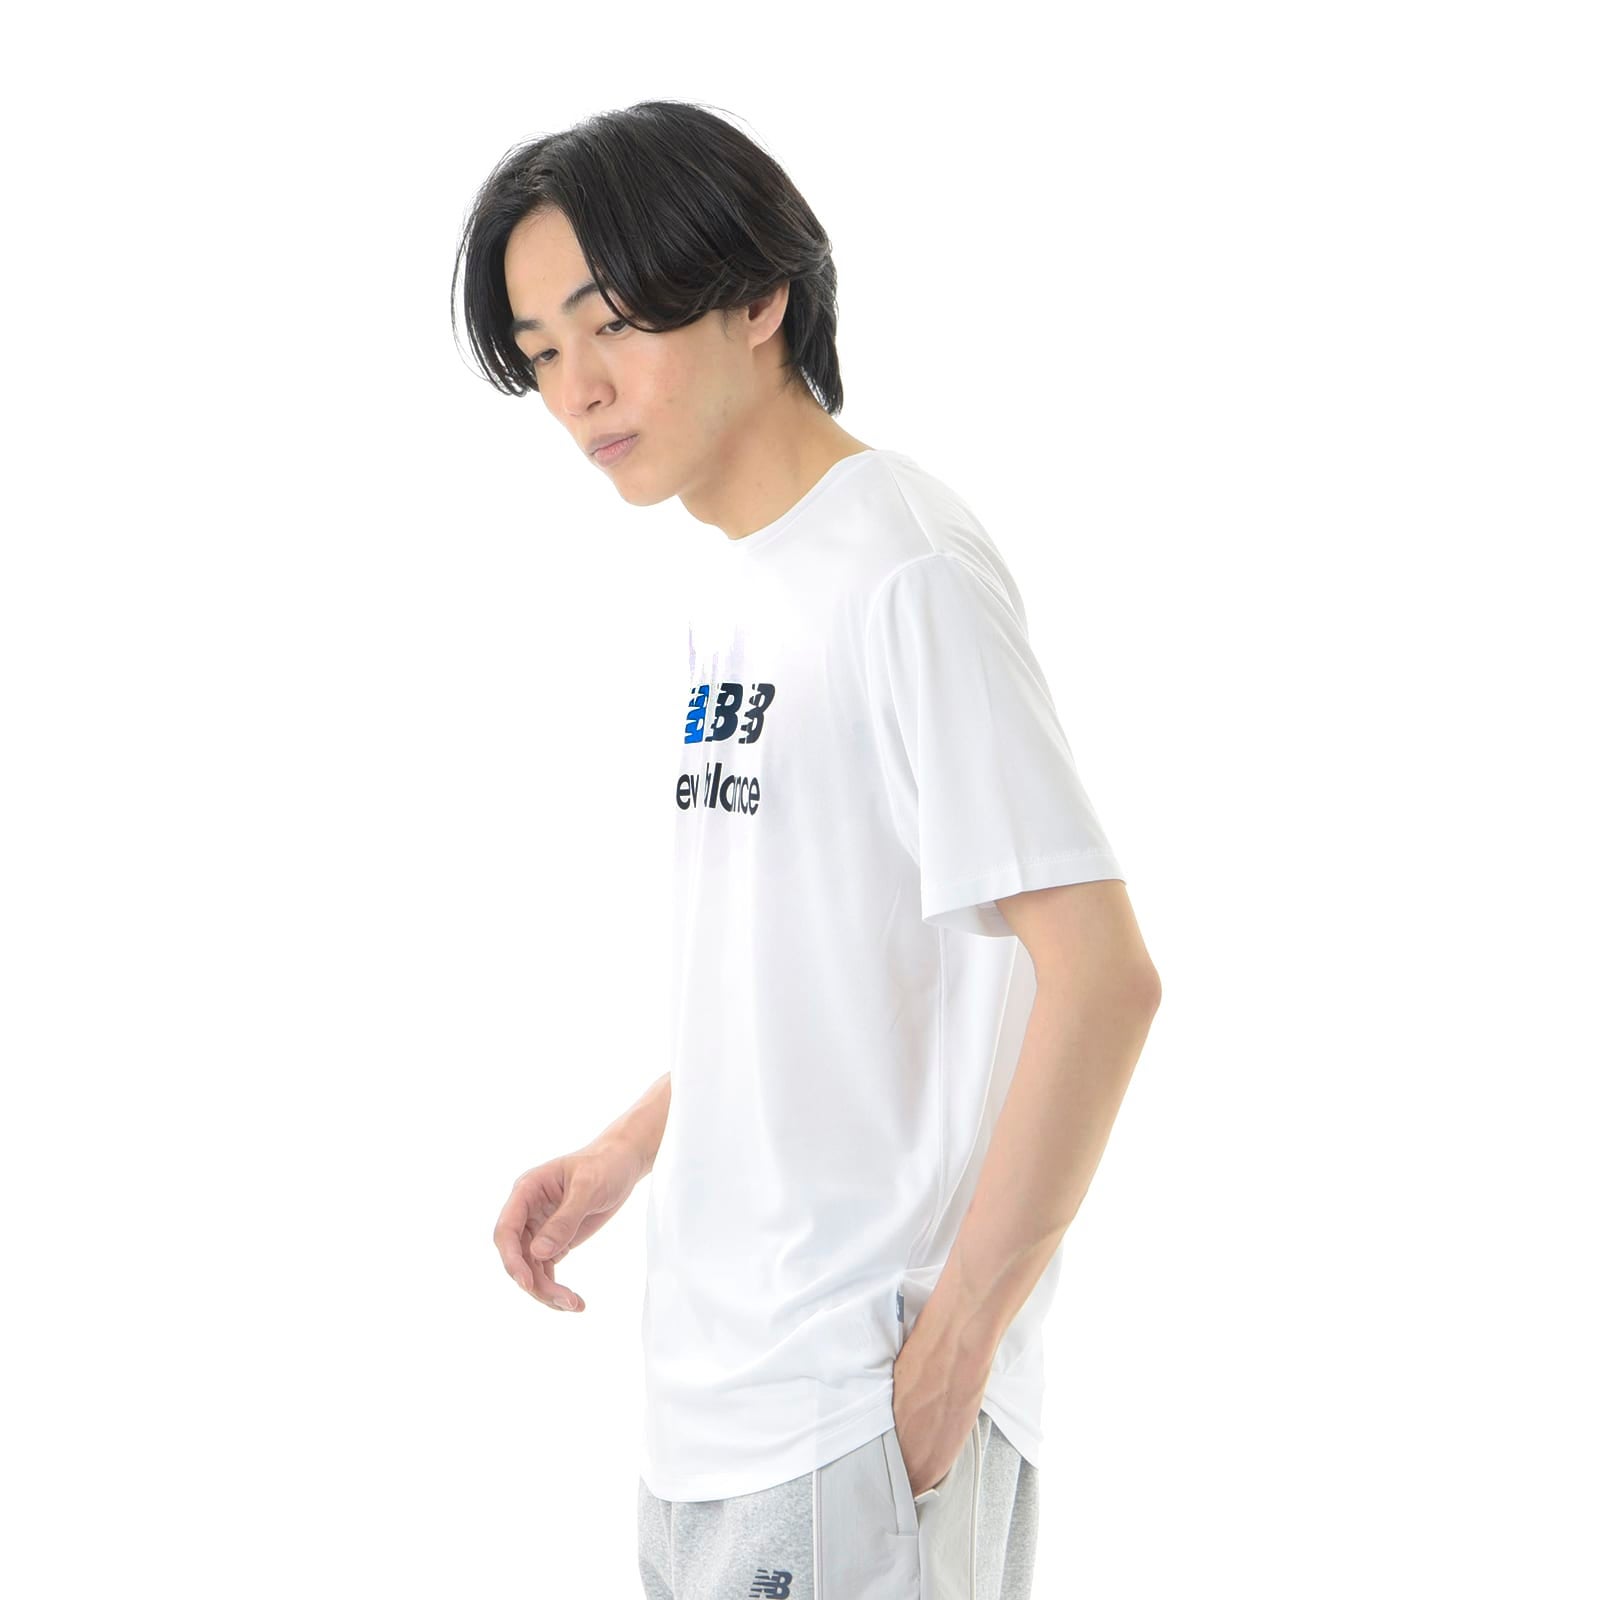 表演图形短袖T恤 (三重LOGO)